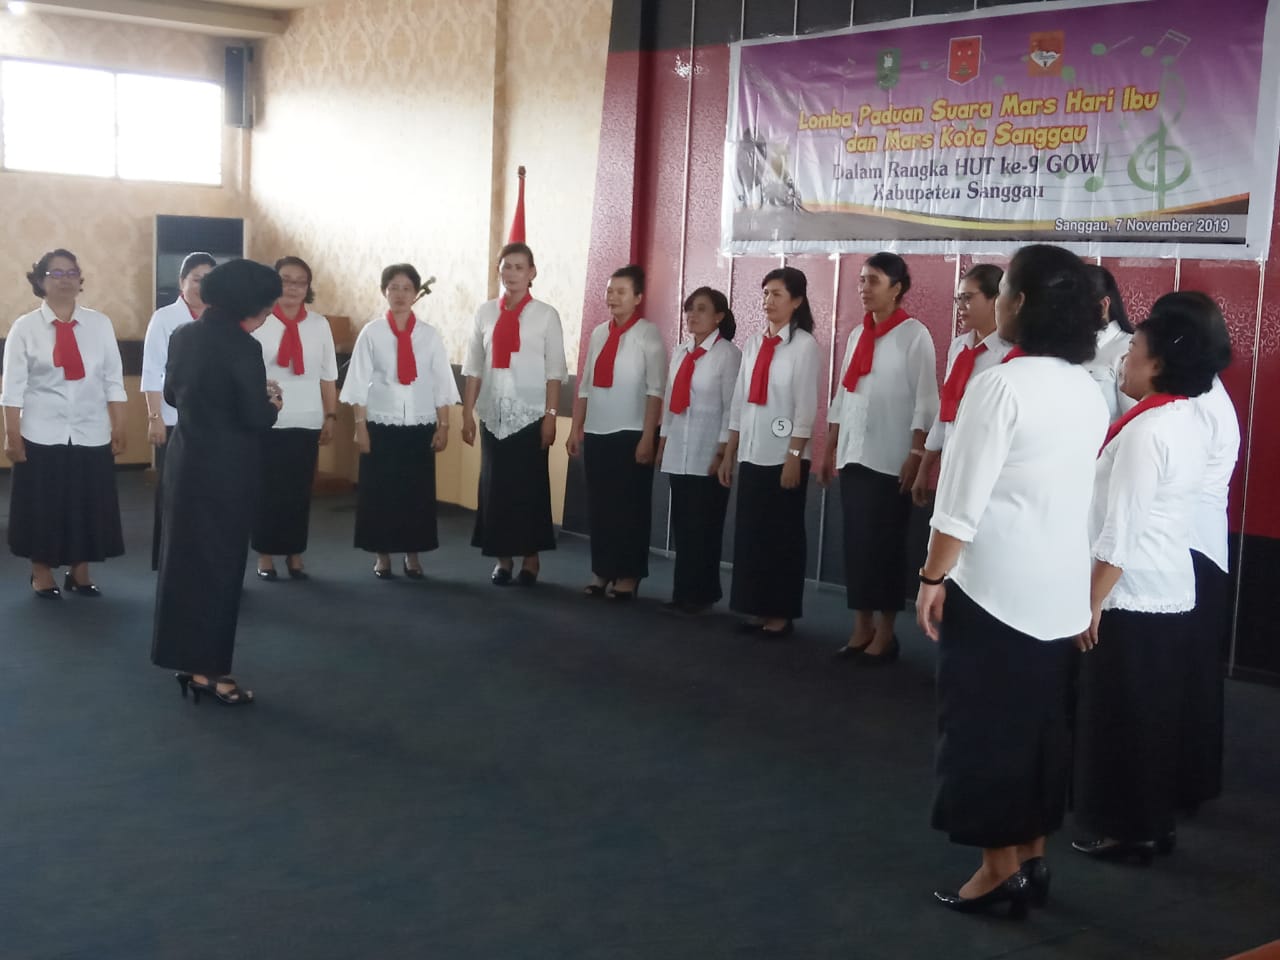 HUT GOW ke-9, GOW Kabupaten Sanggau Gelar Lomba Paduan Suara Mars Hari Ibu dan Mars Kota Sanggau